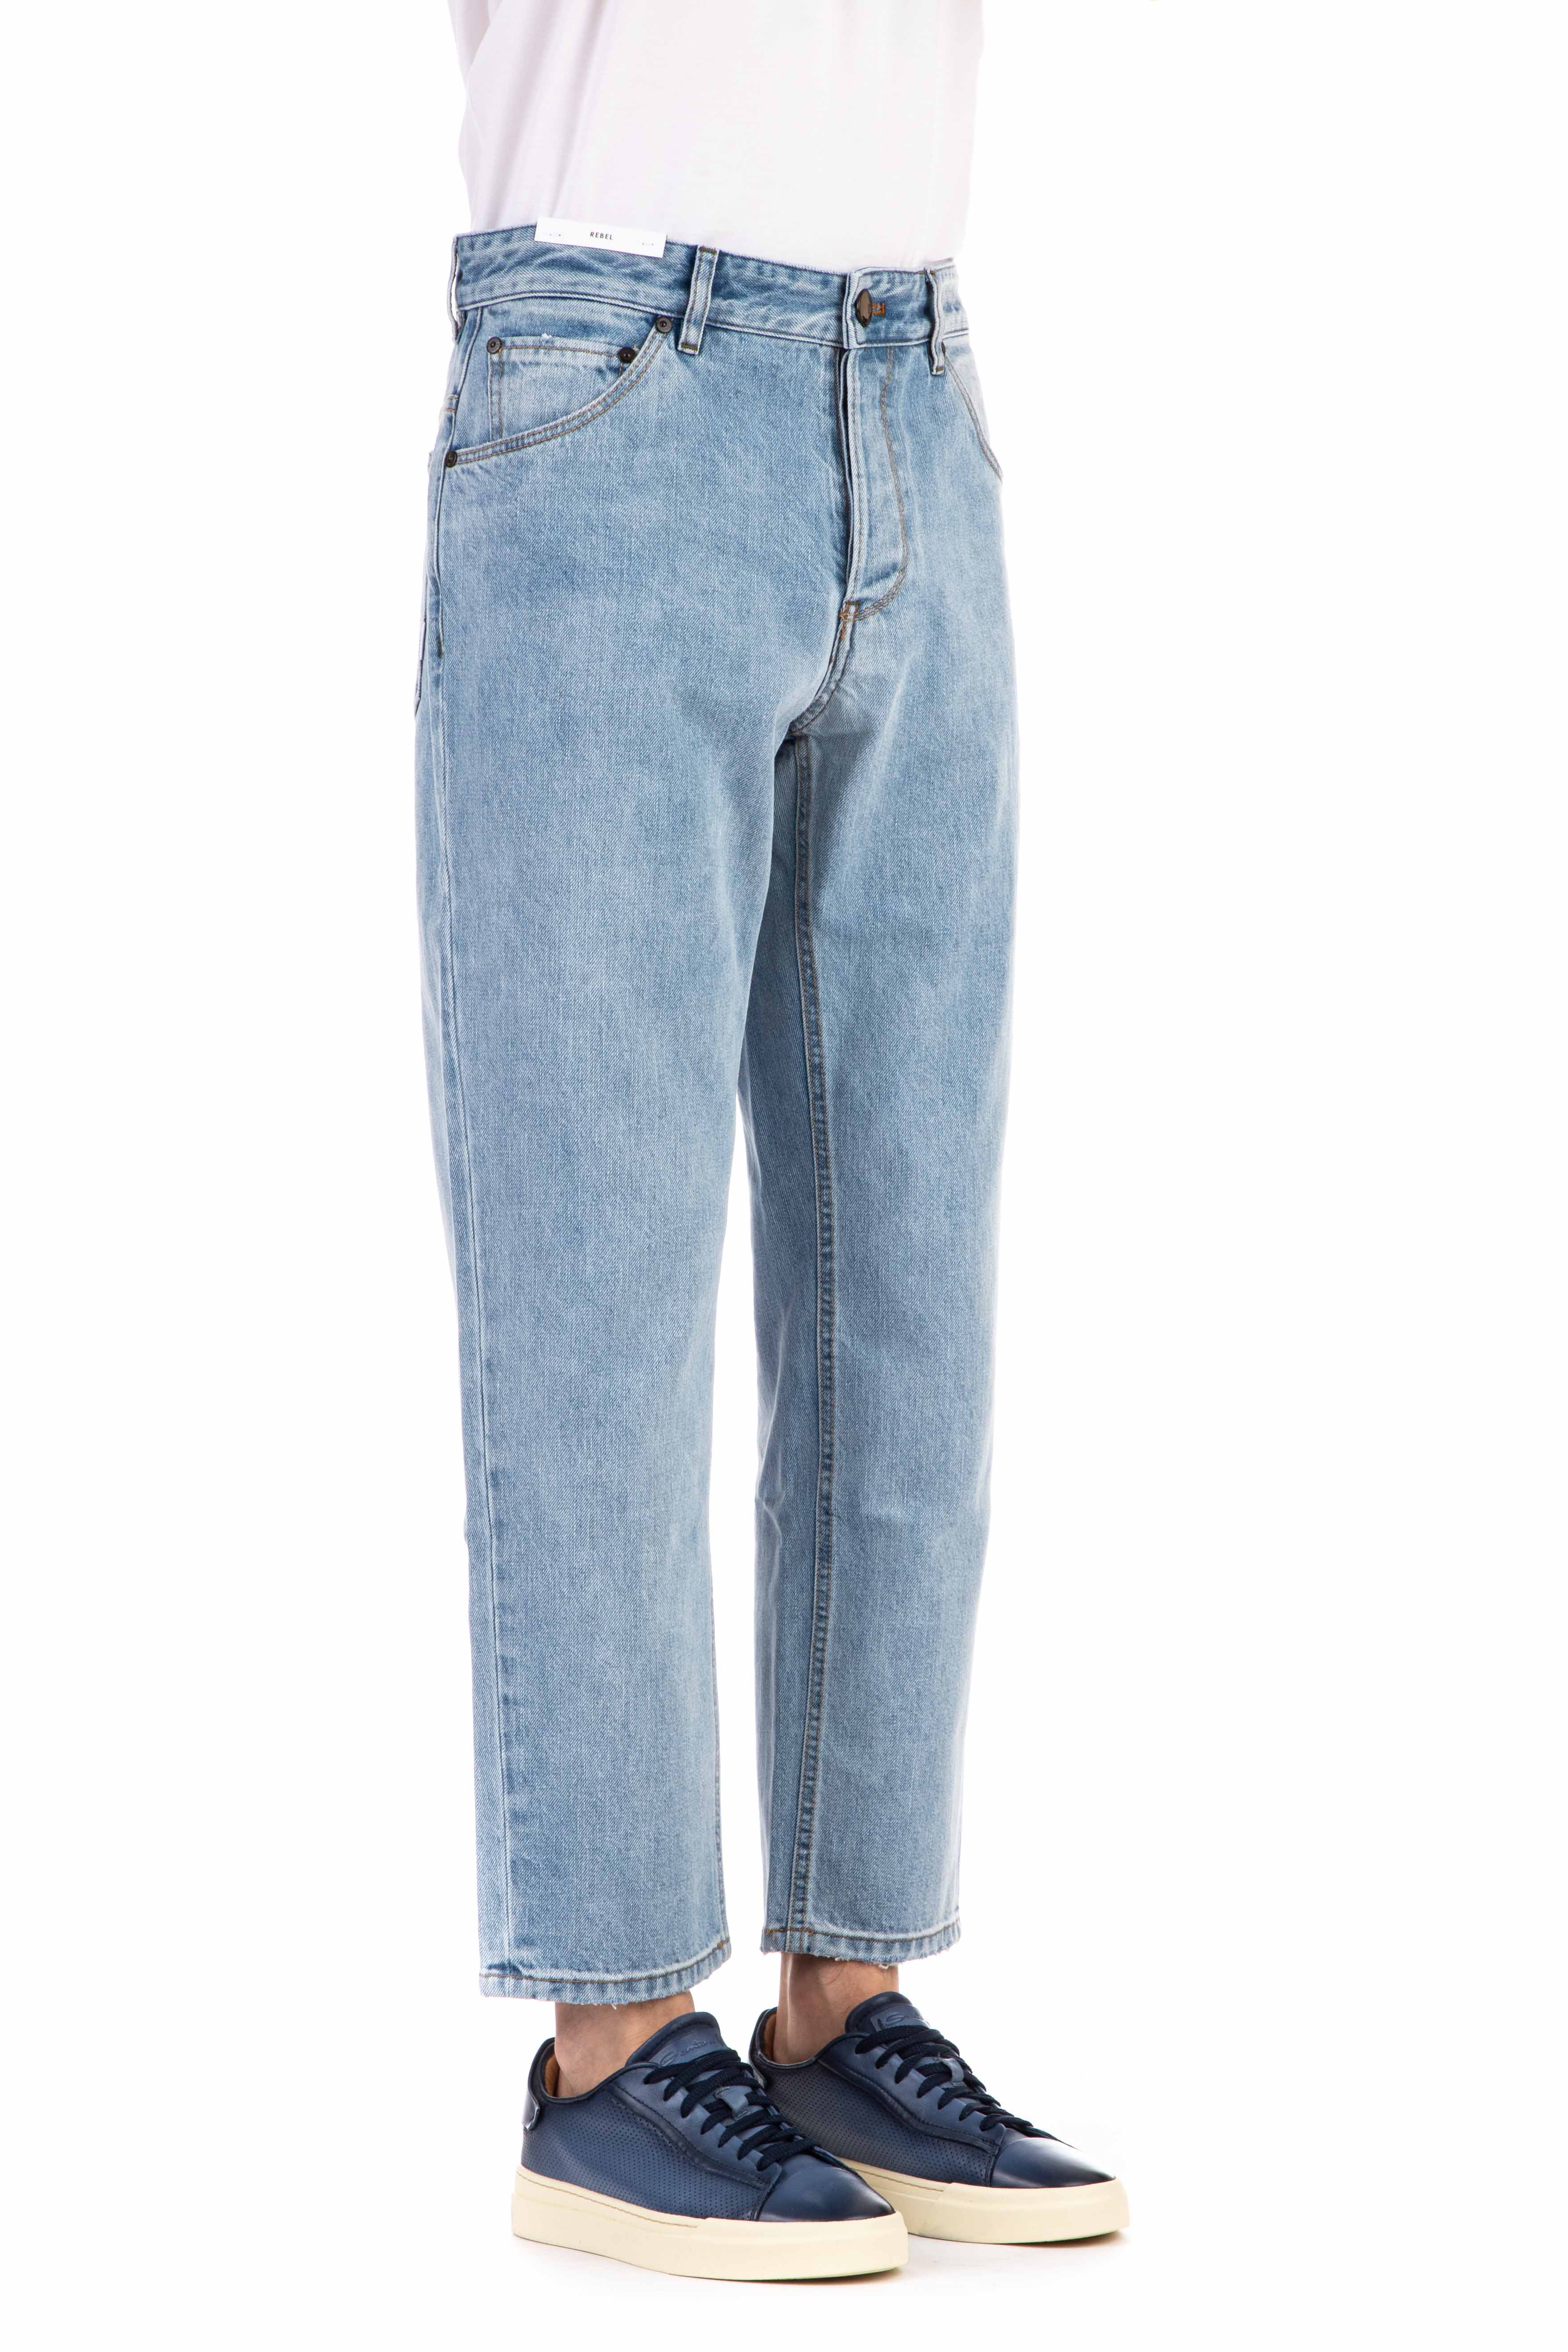 Jeans in puro cotone lavaggio chiaro rebel fit